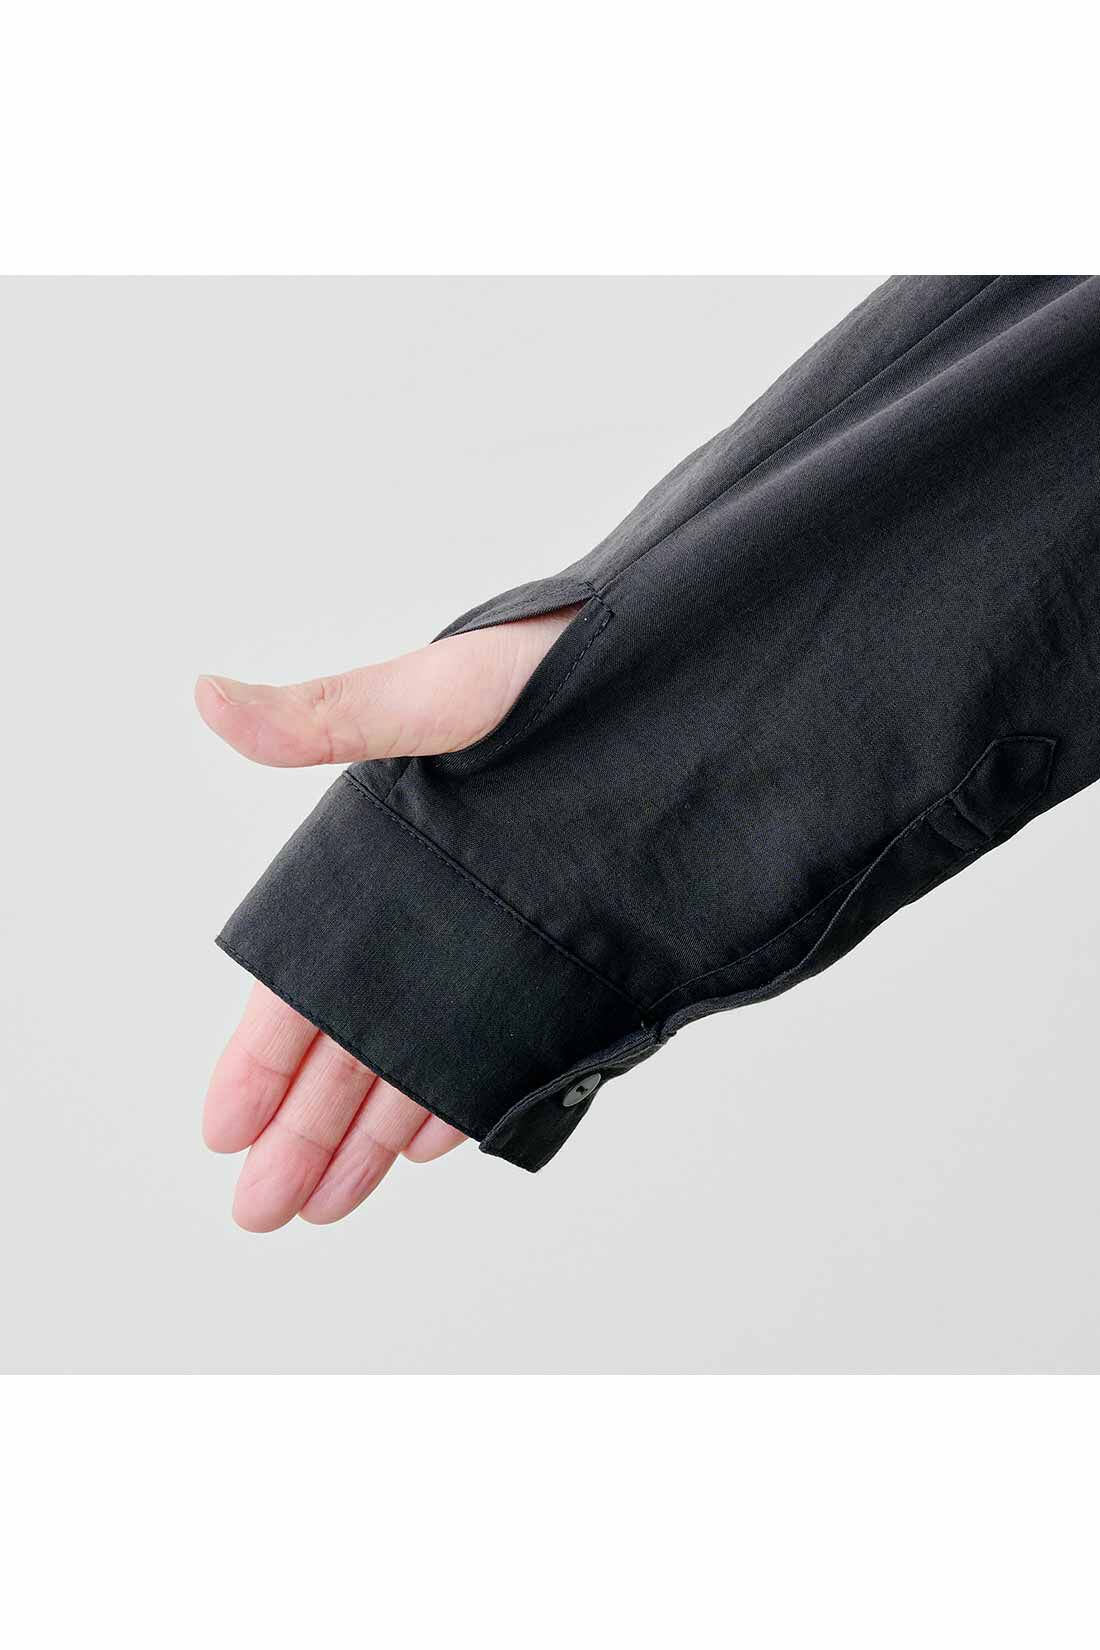 Real Stock|IEDIT[イディット]　衿にワイヤーを入れたUV加工のふわっと軽いロングシャツ〈チャコールグレー〉|親指ホール付きの長めの袖口は手の甲までしっかりカバー。